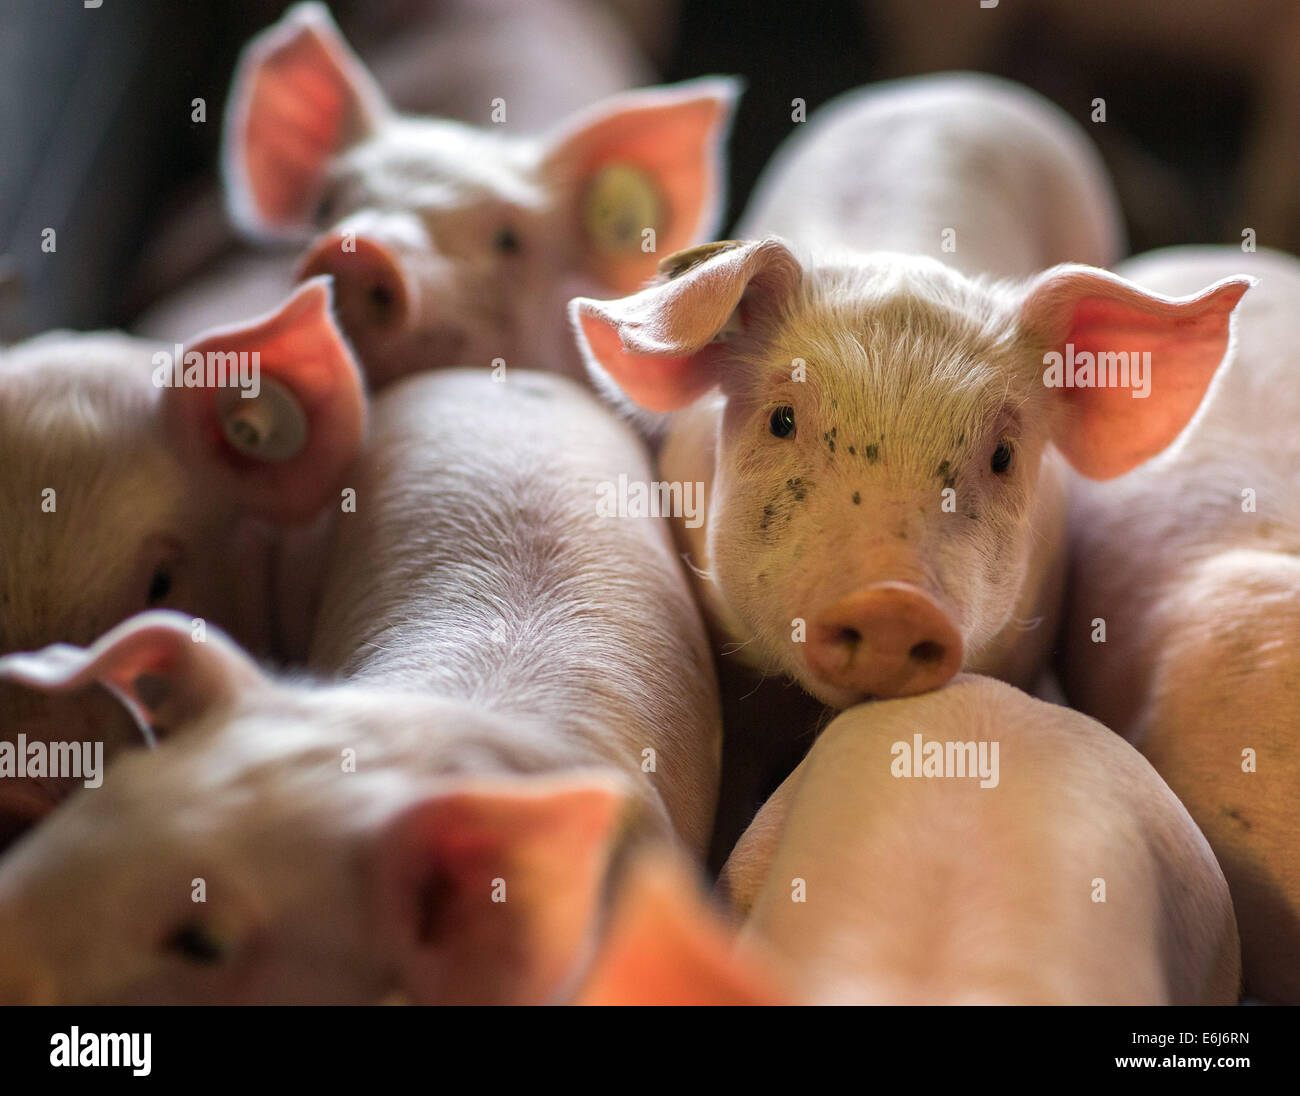 Ferkel ein paar Tage alt, in einem Stall der Tierzucht Bauernhof Losten, Deutschland, 21. August 2014. Bis zu 160.000 Ferkel im Stall werden jedes Jahr geboren. Mit 65.000 Tiere ist die Farm eines der größten Schweinehaltung in Deutschland. Foto: Jens Büttner/dpa Stockfoto